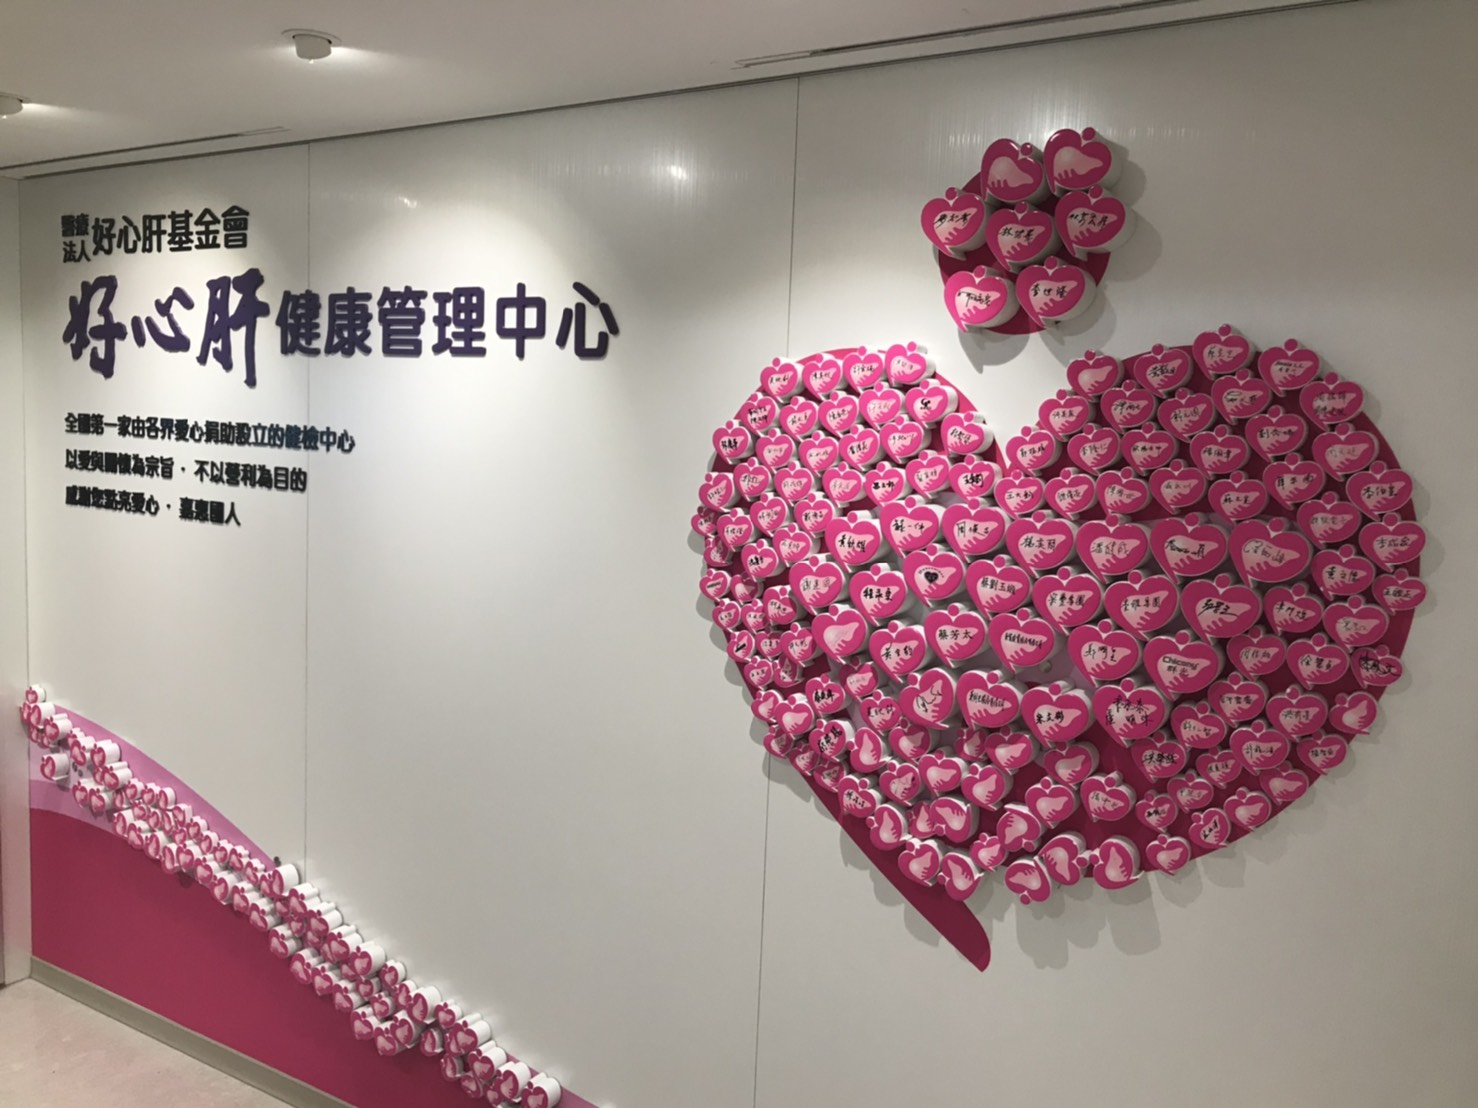 瓷心慈心！  傑作陶藝公司為醫療法人好心肝基金會義務製作捐款人愛心瓷牌。